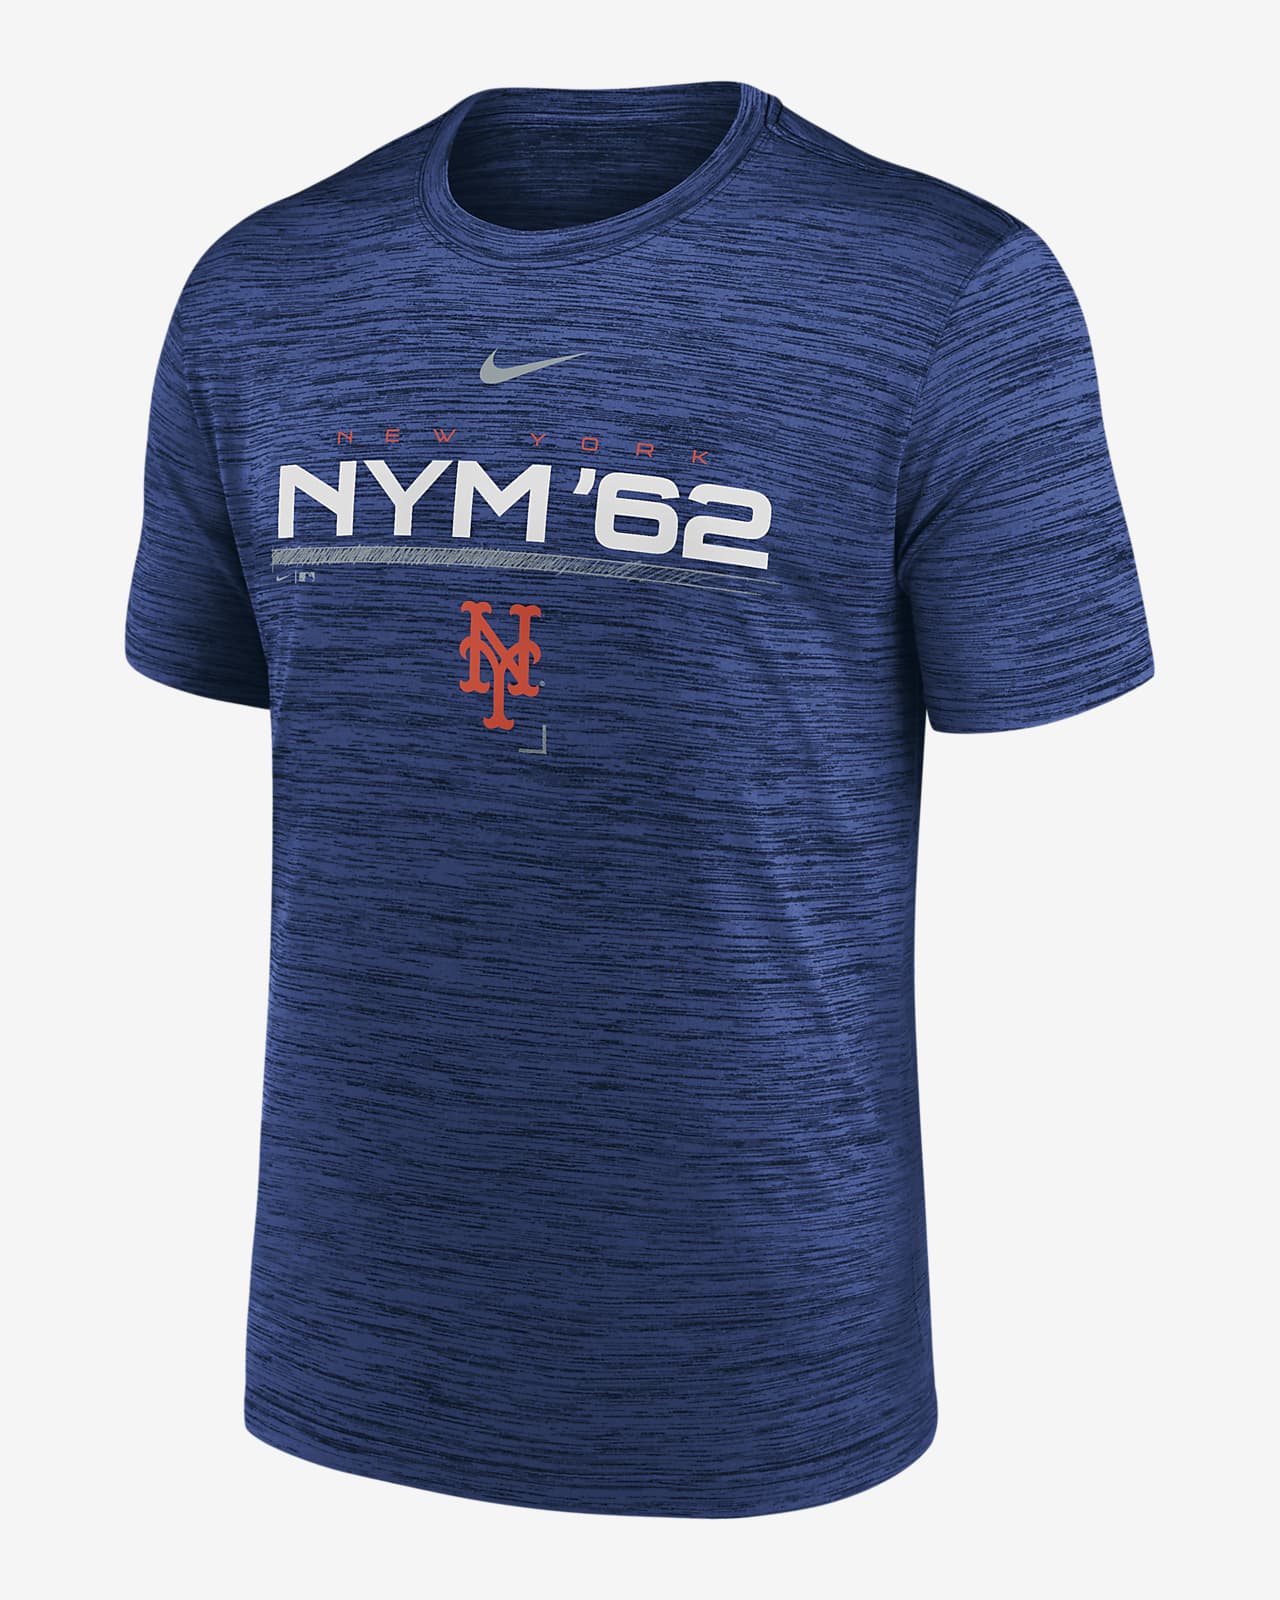 Nike Men's New York Mets MLB Jerseys for sale